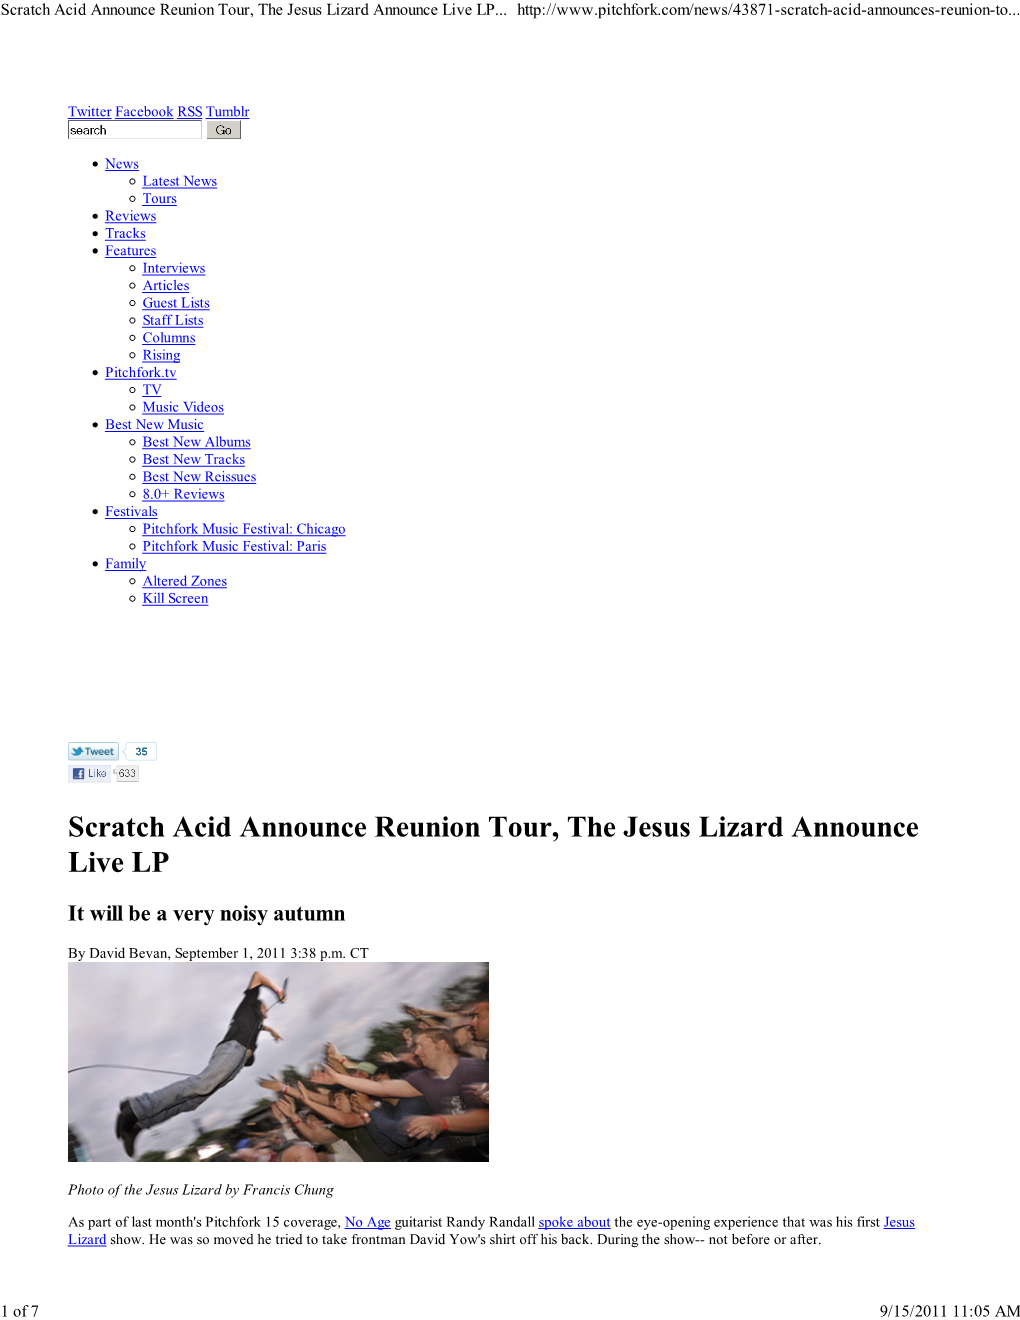 Scratch Acid Announce Reunion Tour, the Jesus Lizard Announce Live LP